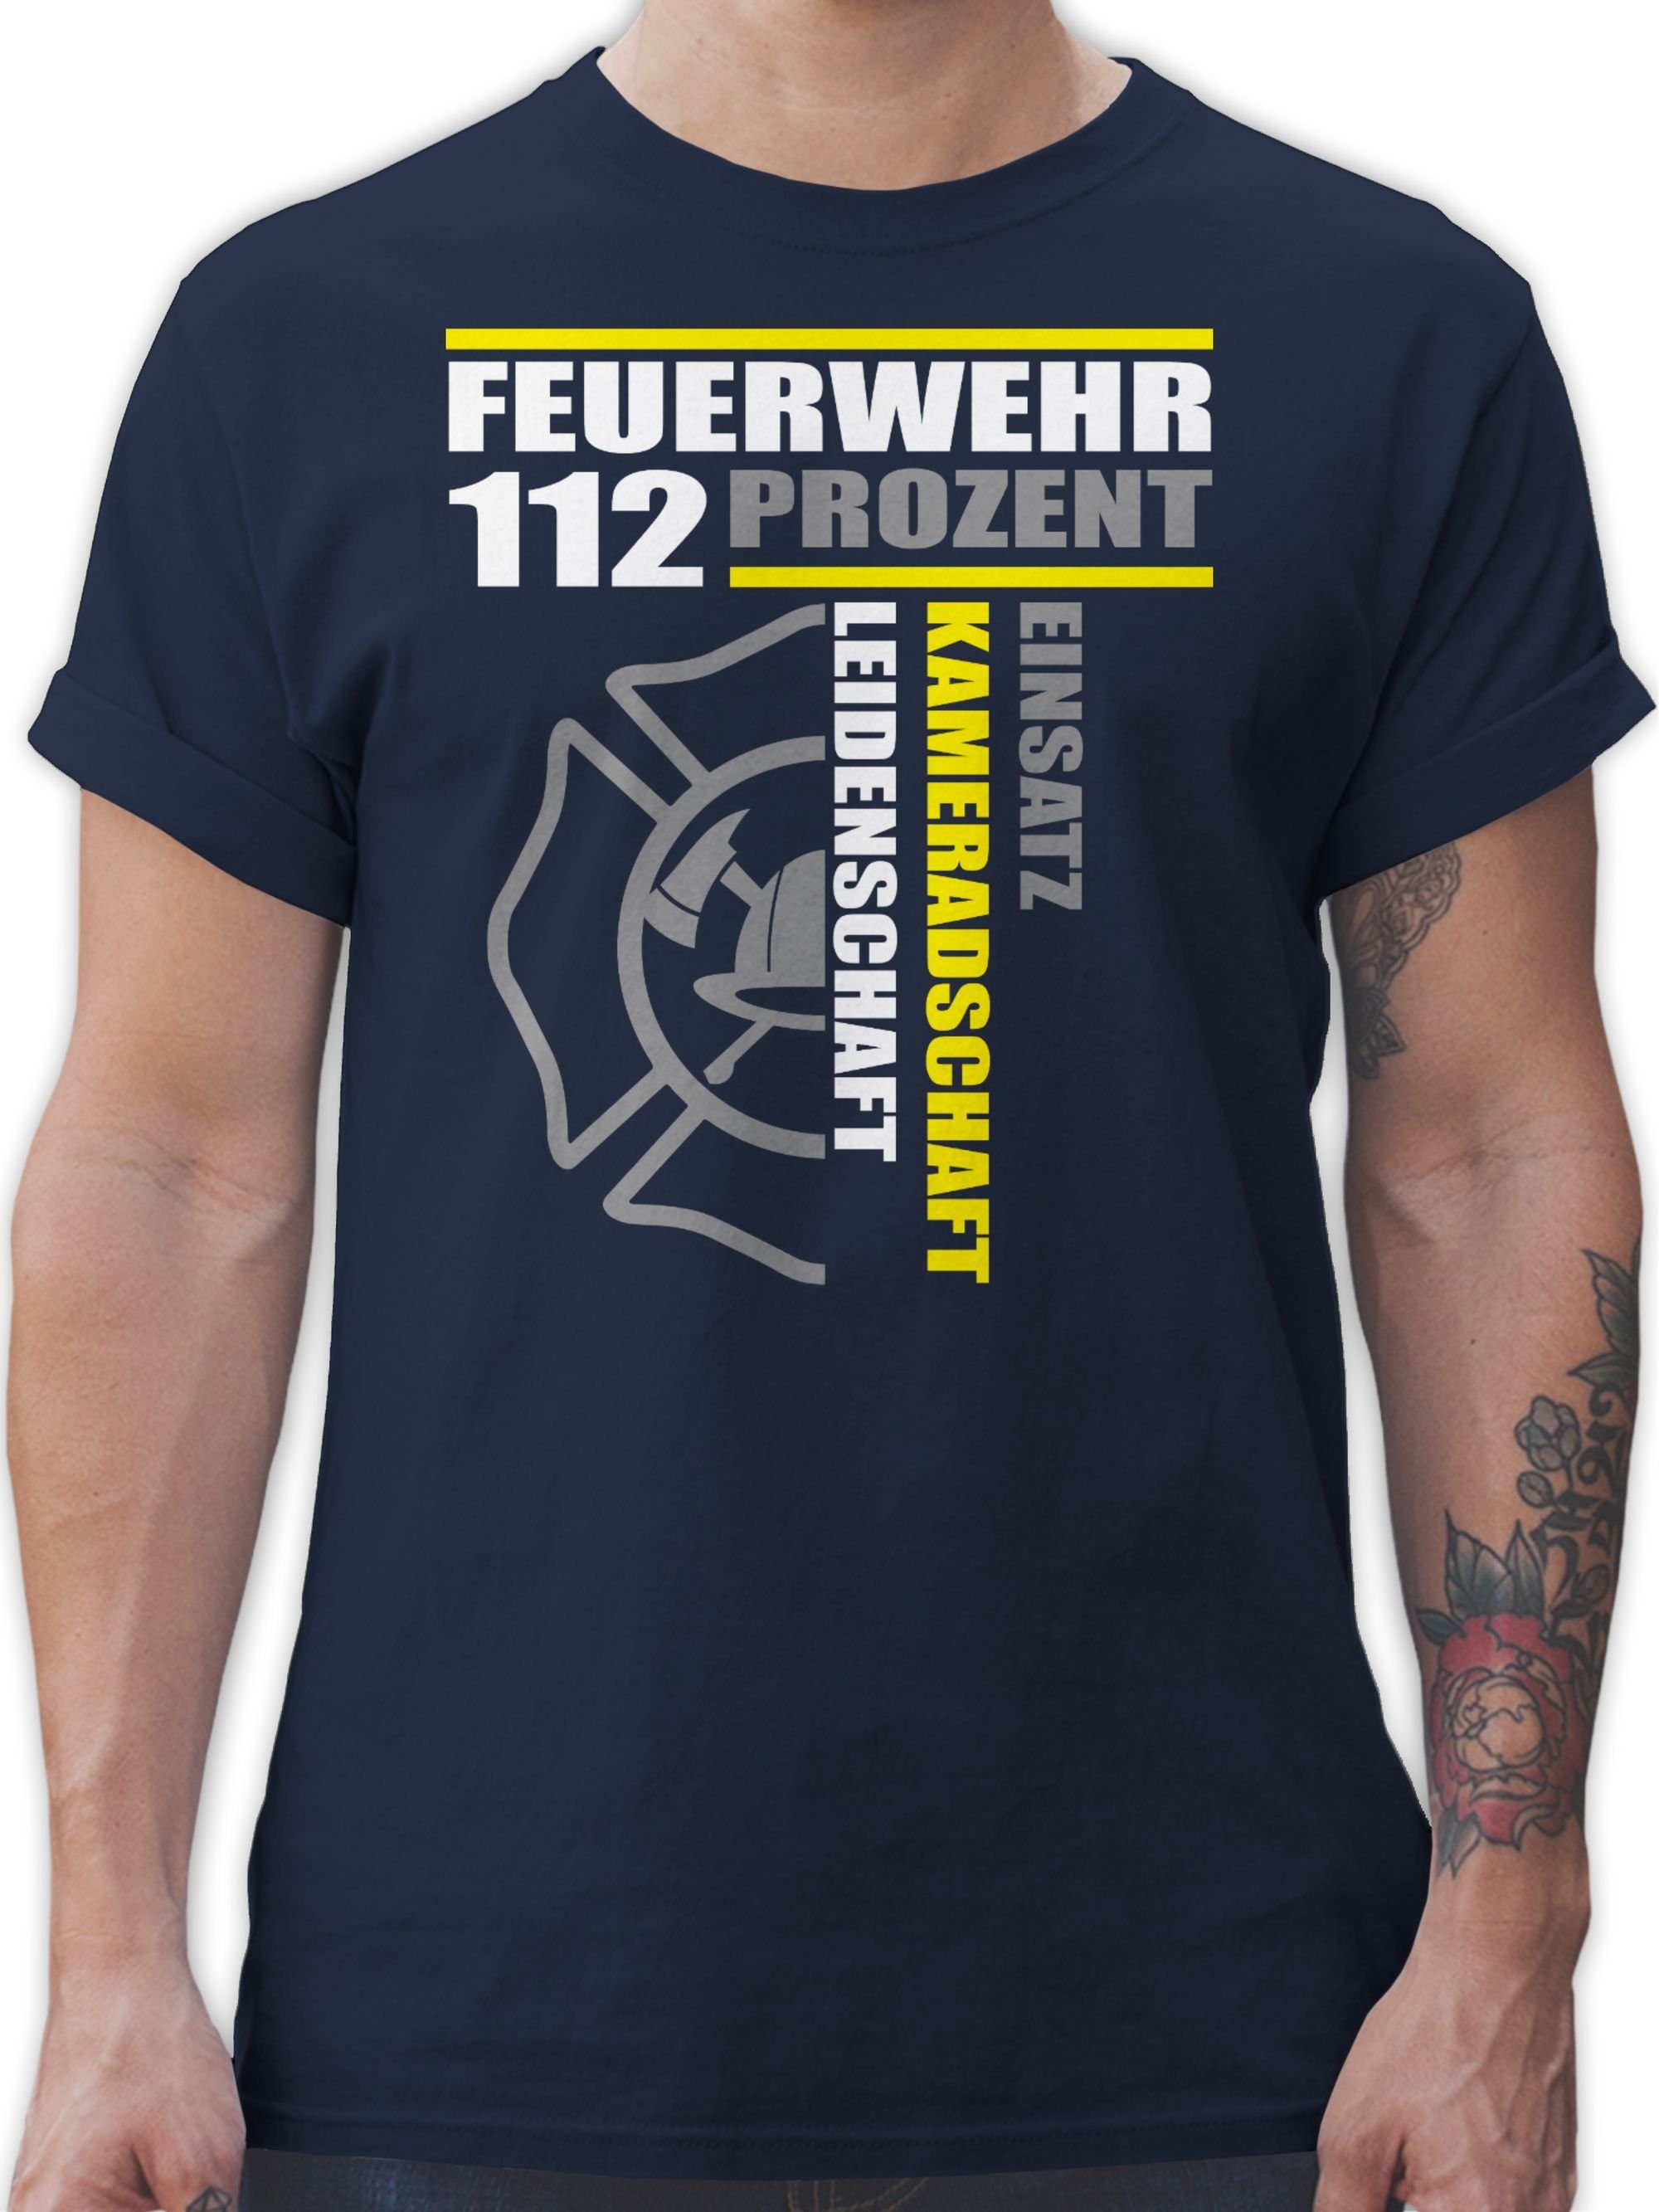 Shirtracer T-Shirt Feuerwehr 112 Prozent - Einsatz Kameradschaft Leidenschaft - Freiwilli Feuerwehr 01 Navy Blau